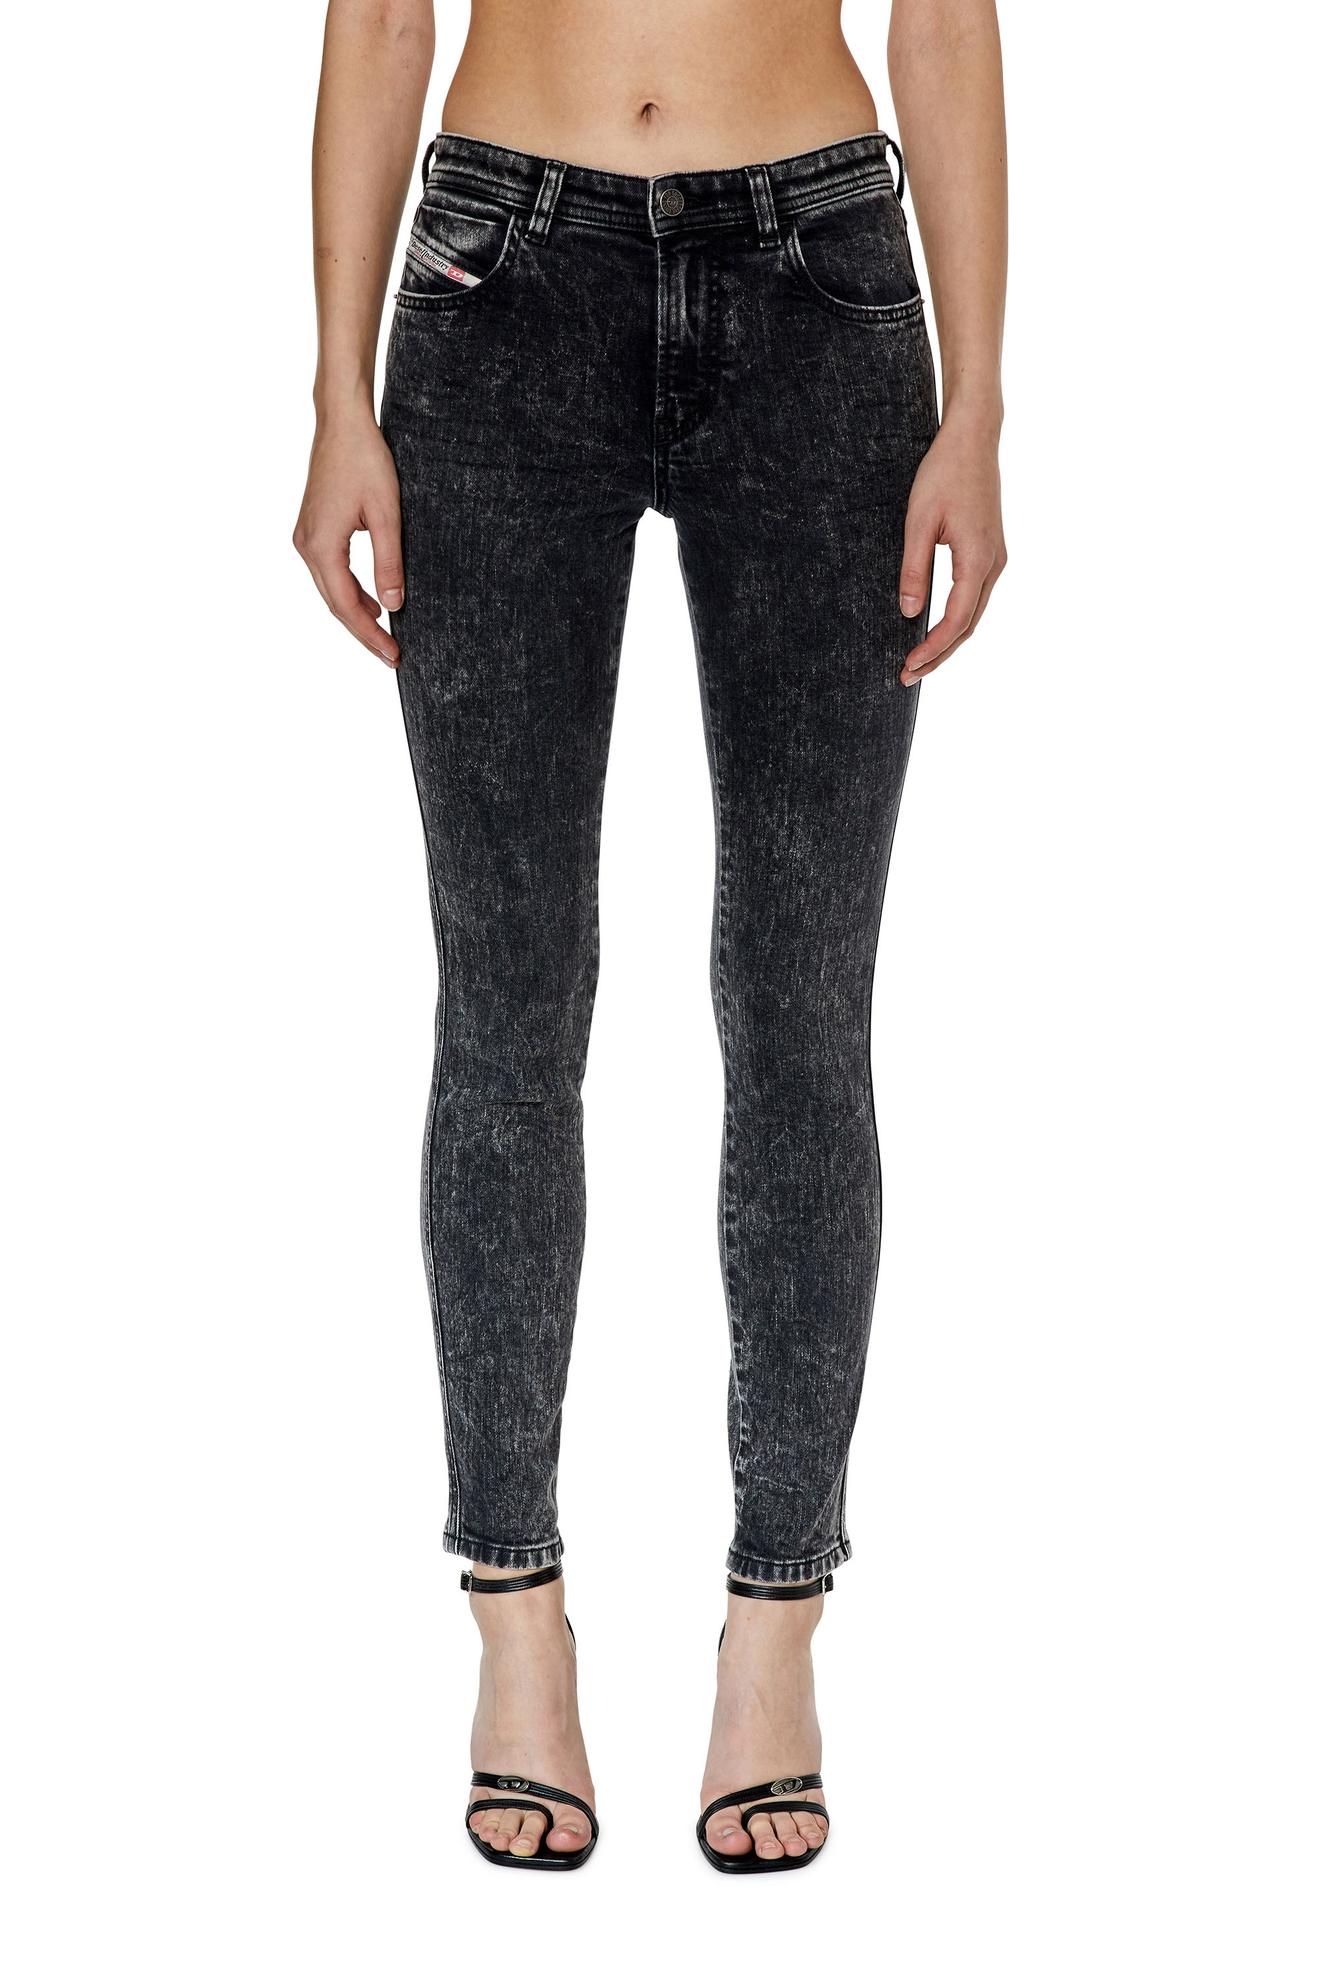 Tilbud: Skinny Jeans - 2015 Babhila kr 1200 på Diesel